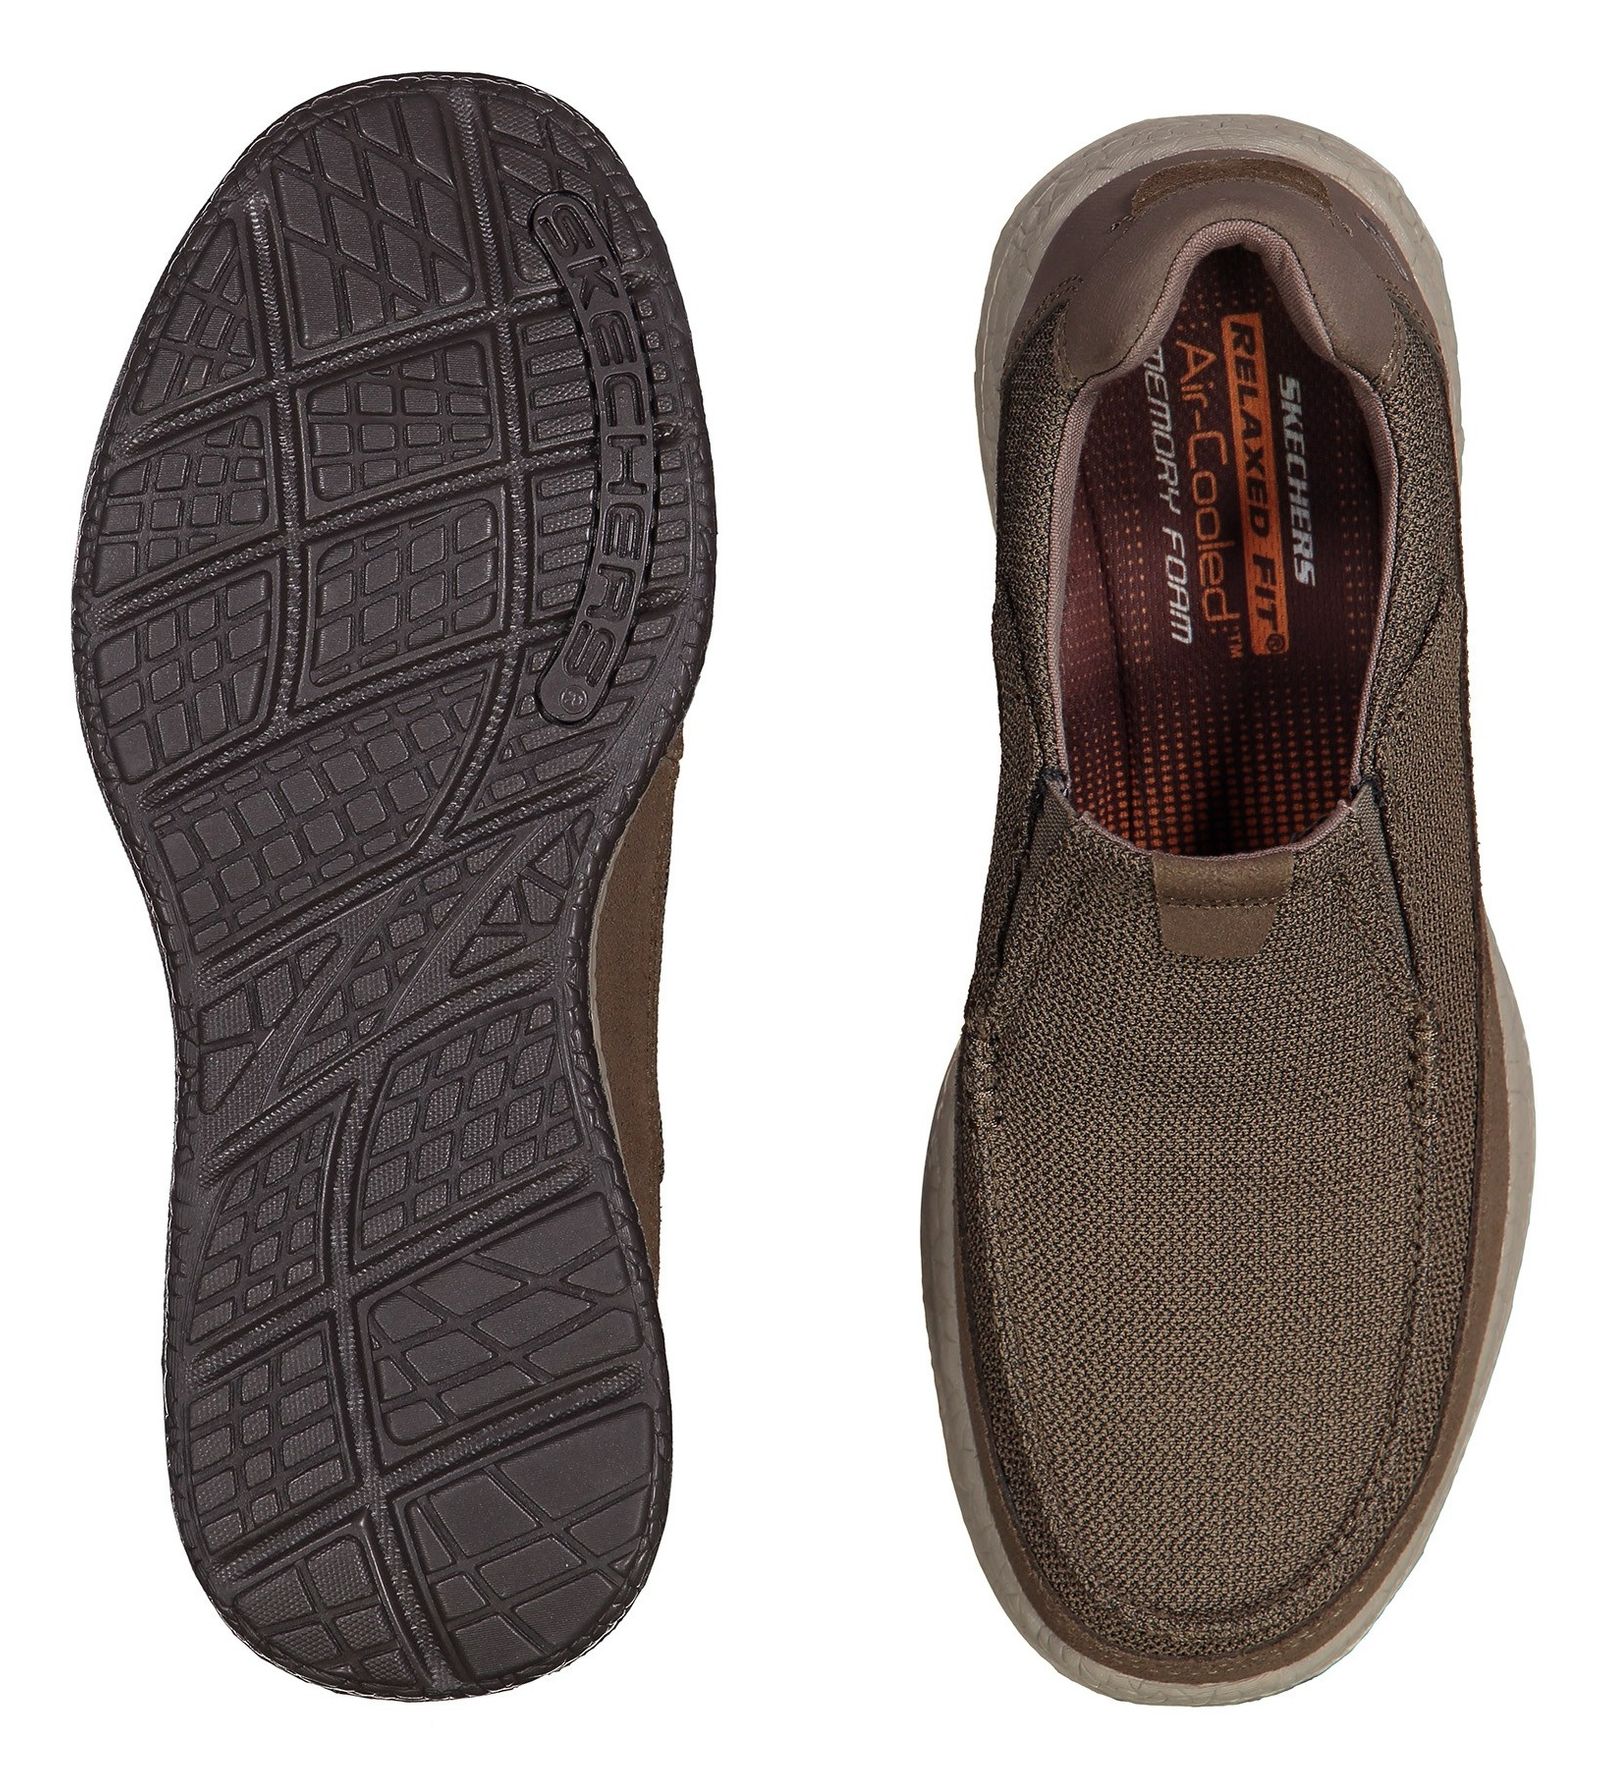 کفش راحتی پارچه ای مردانه Bursen Kinto - اسکچرز - قهوه اي روشن - 3